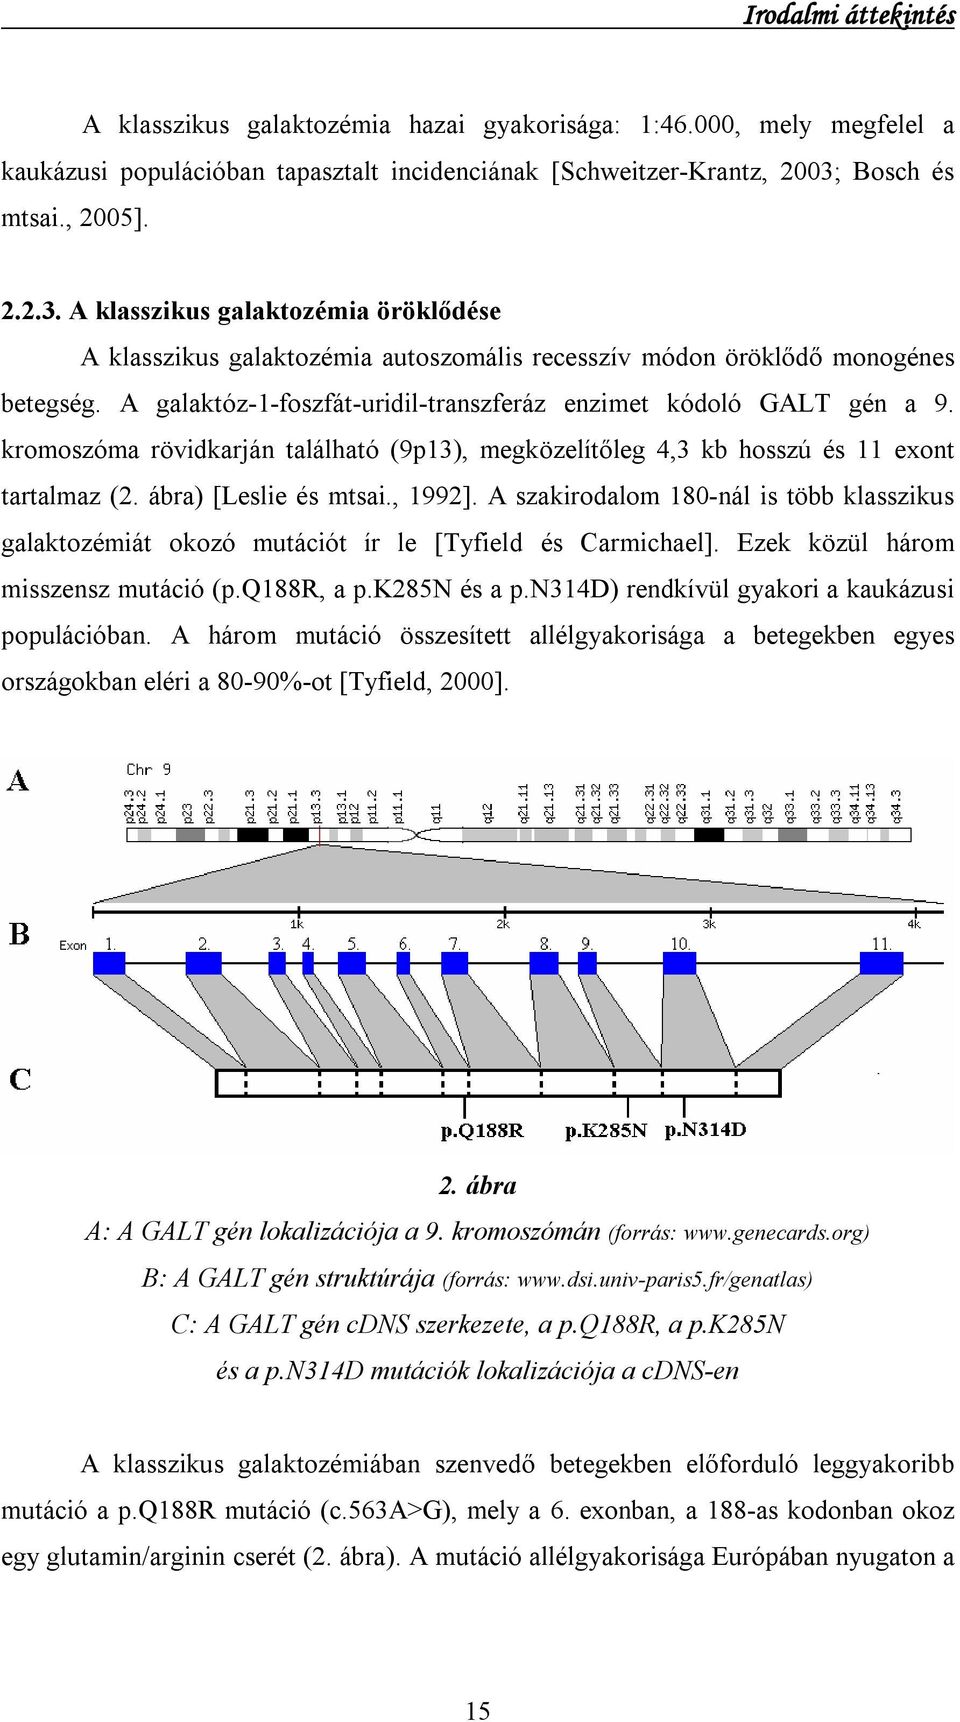 A galaktóz-1-foszfát-uridil-transzferáz enzimet kódoló GALT gén a 9. kromoszóma rövidkarján található (9p13), megközelítőleg 4,3 kb hosszú és 11 exont tartalmaz (2. ábra) [Leslie és mtsai., 1992].